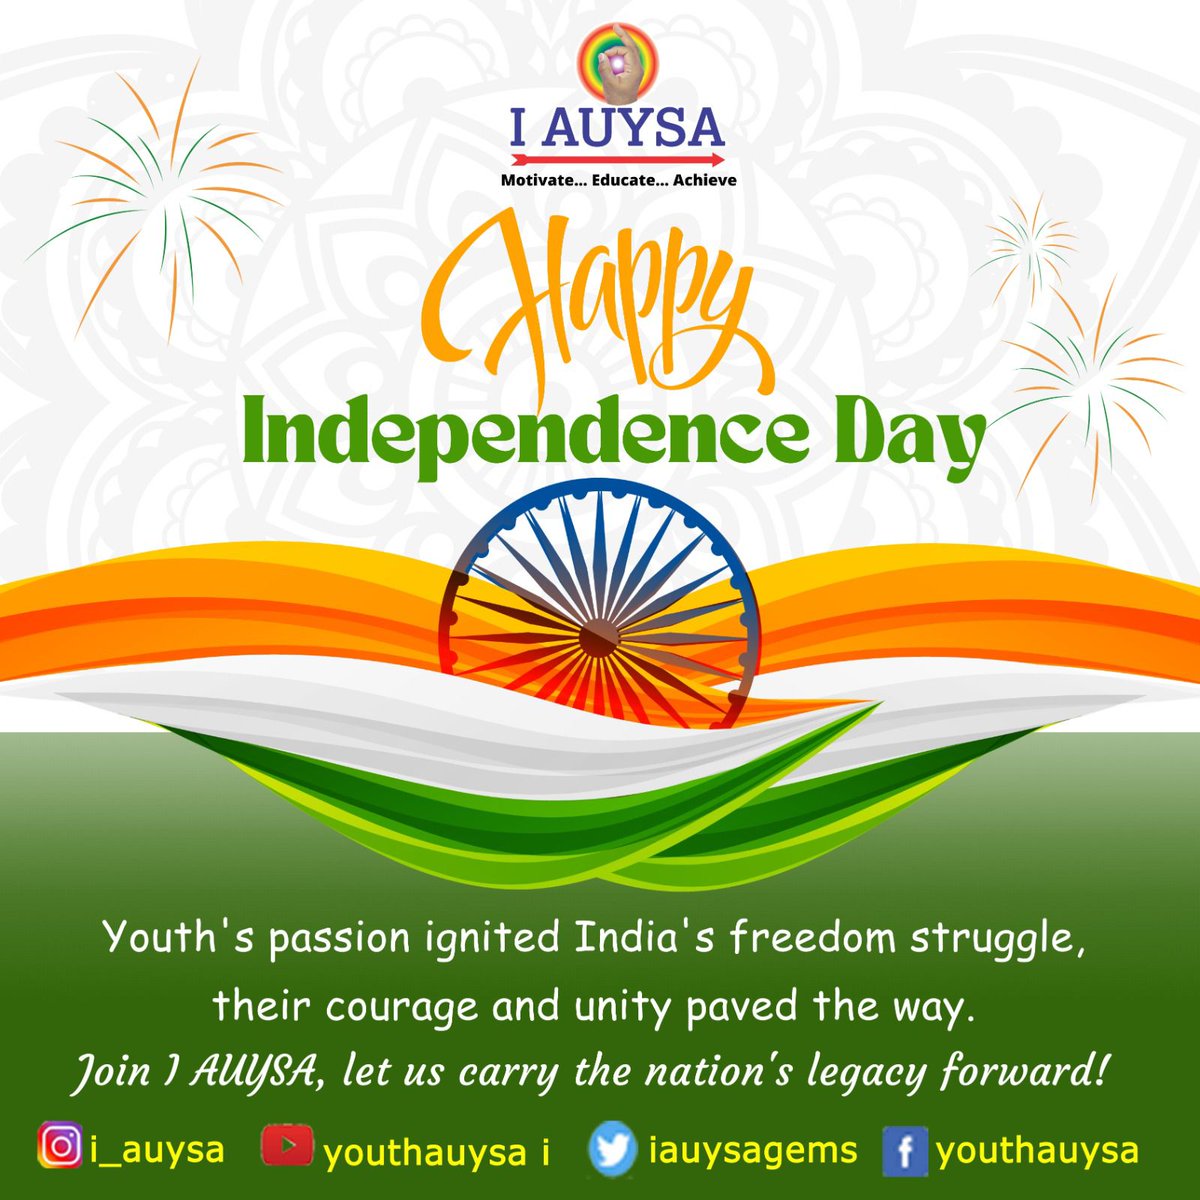 #IndependenceDayIndia #india #indian #iauysa #iauysagems #spmaestro #youth